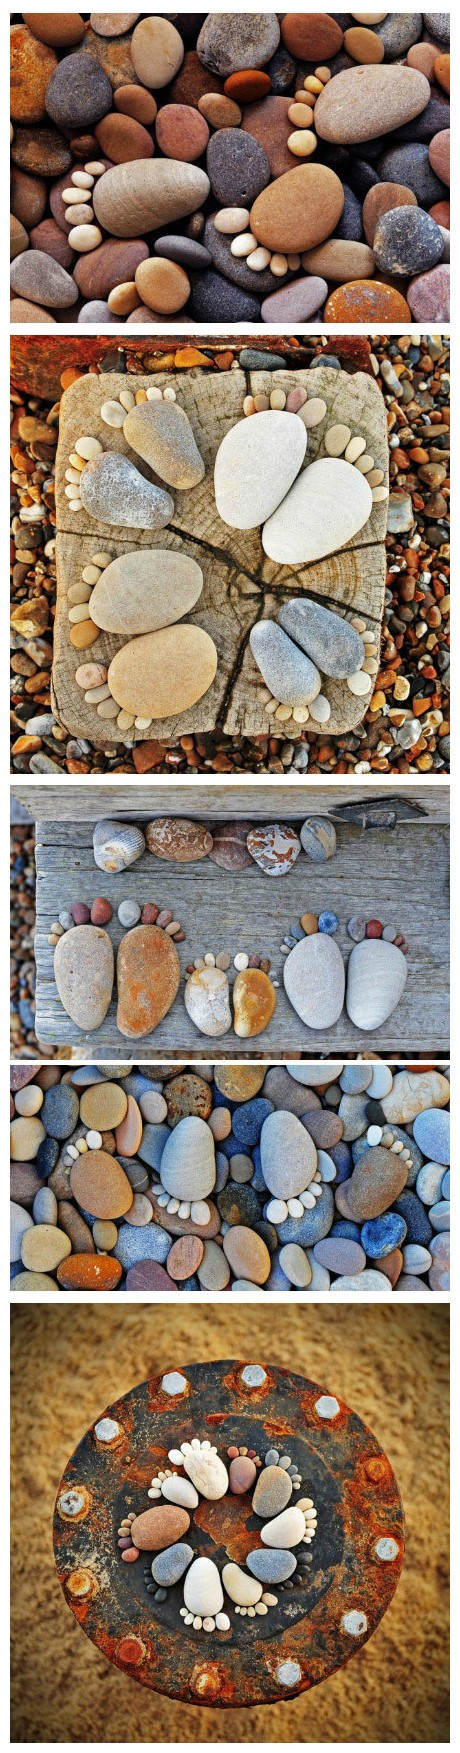 Diy stone & pebble feet figurines